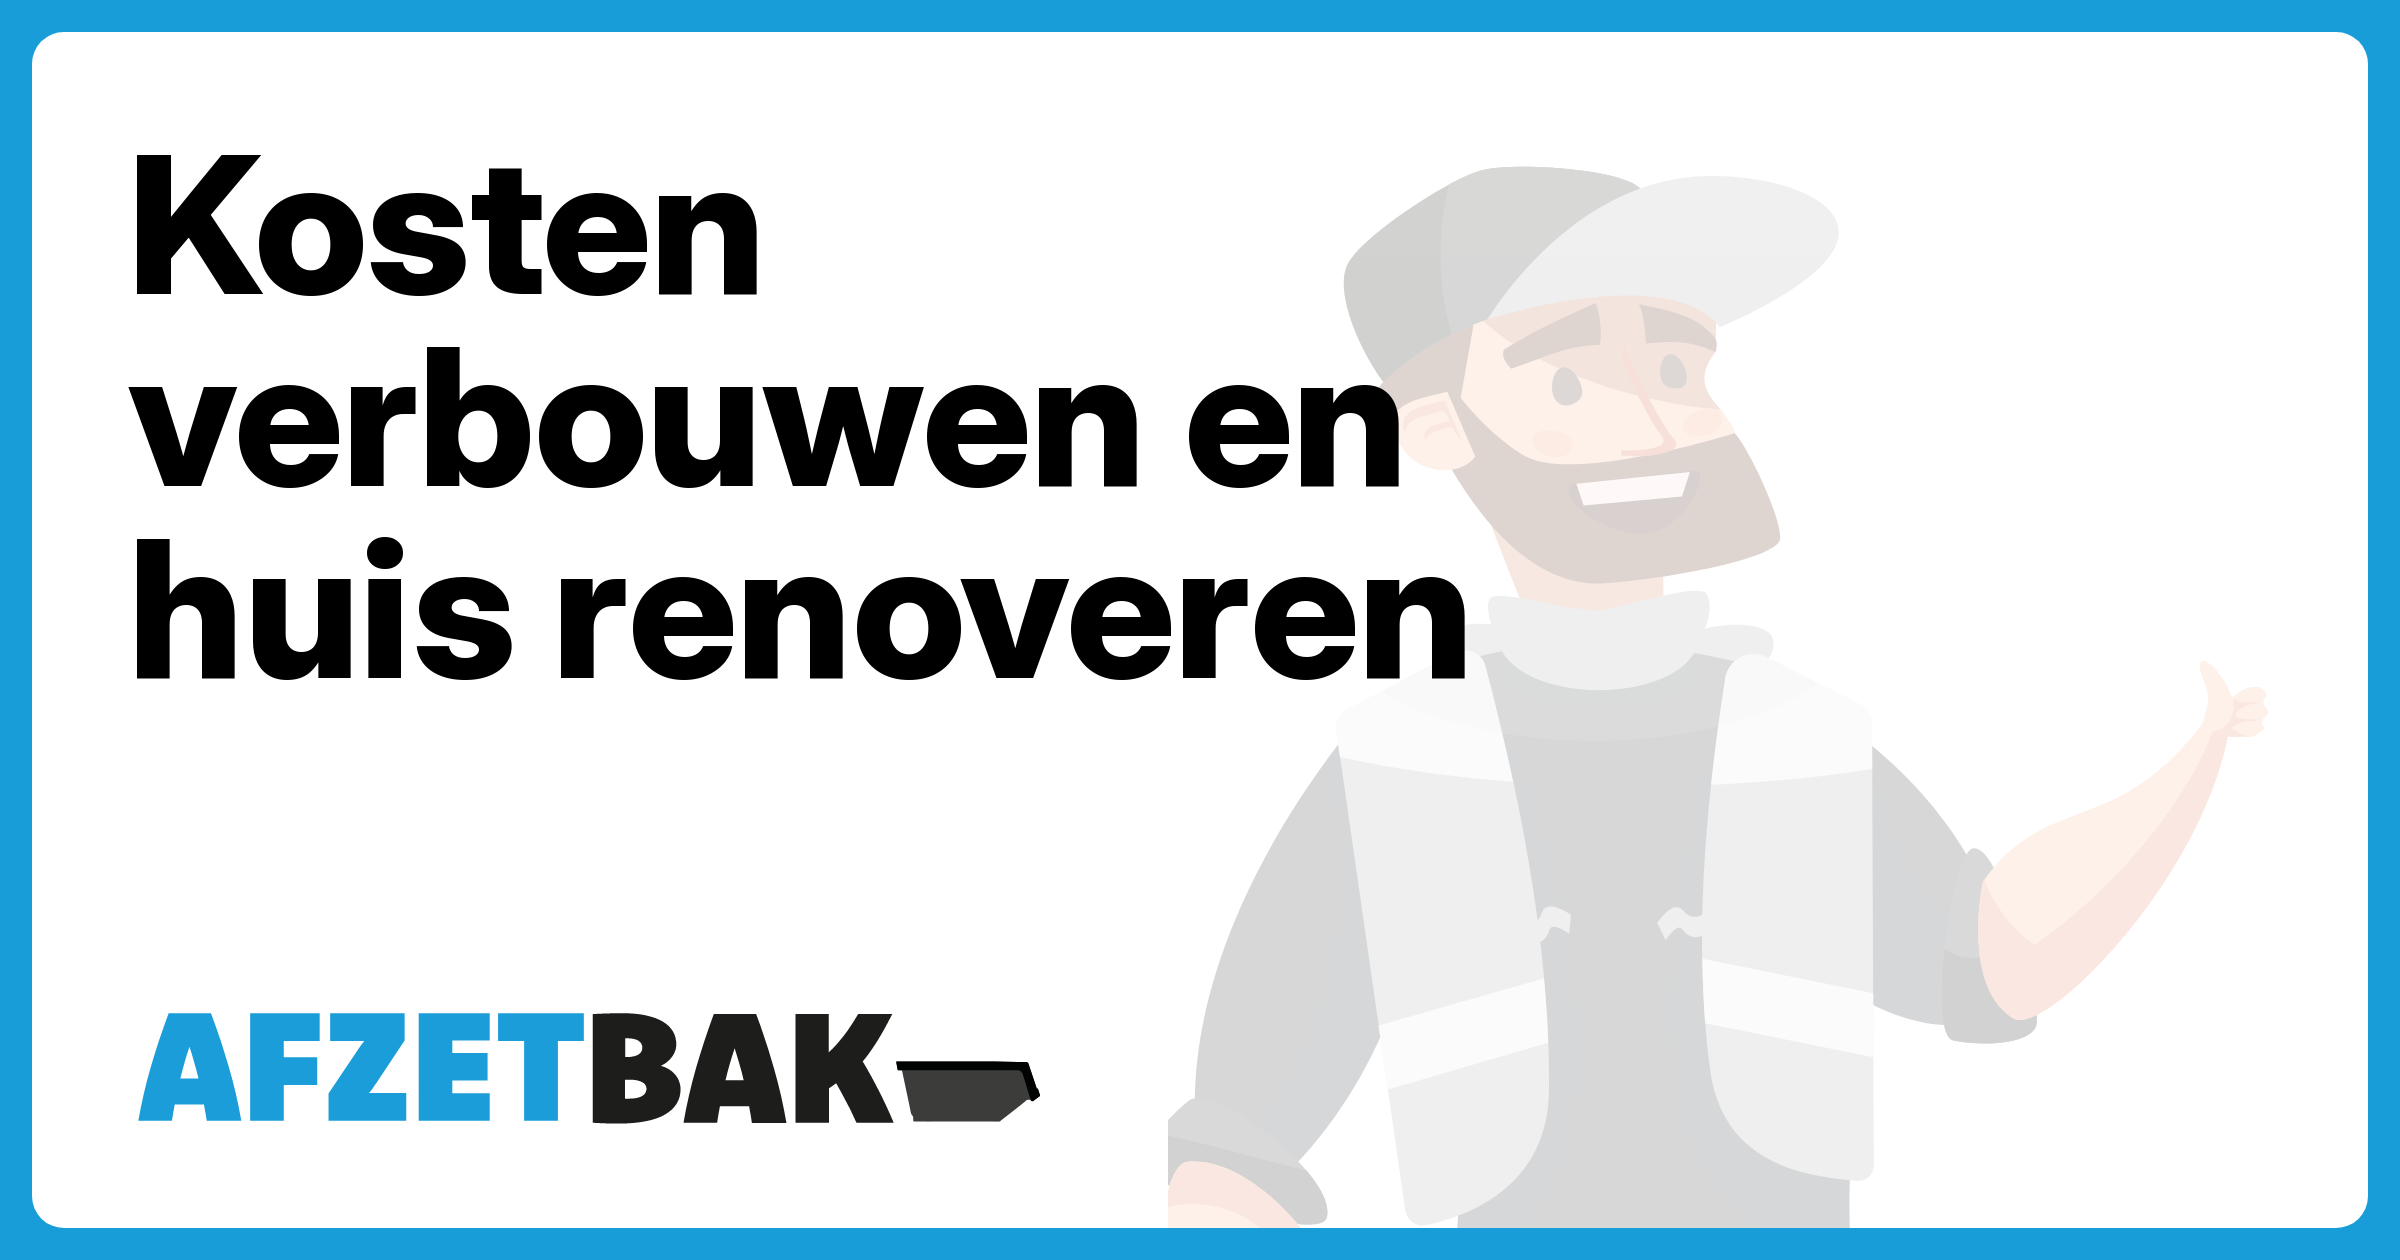 Kosten verbouwen en huis renoveren - Afzetbak.nl